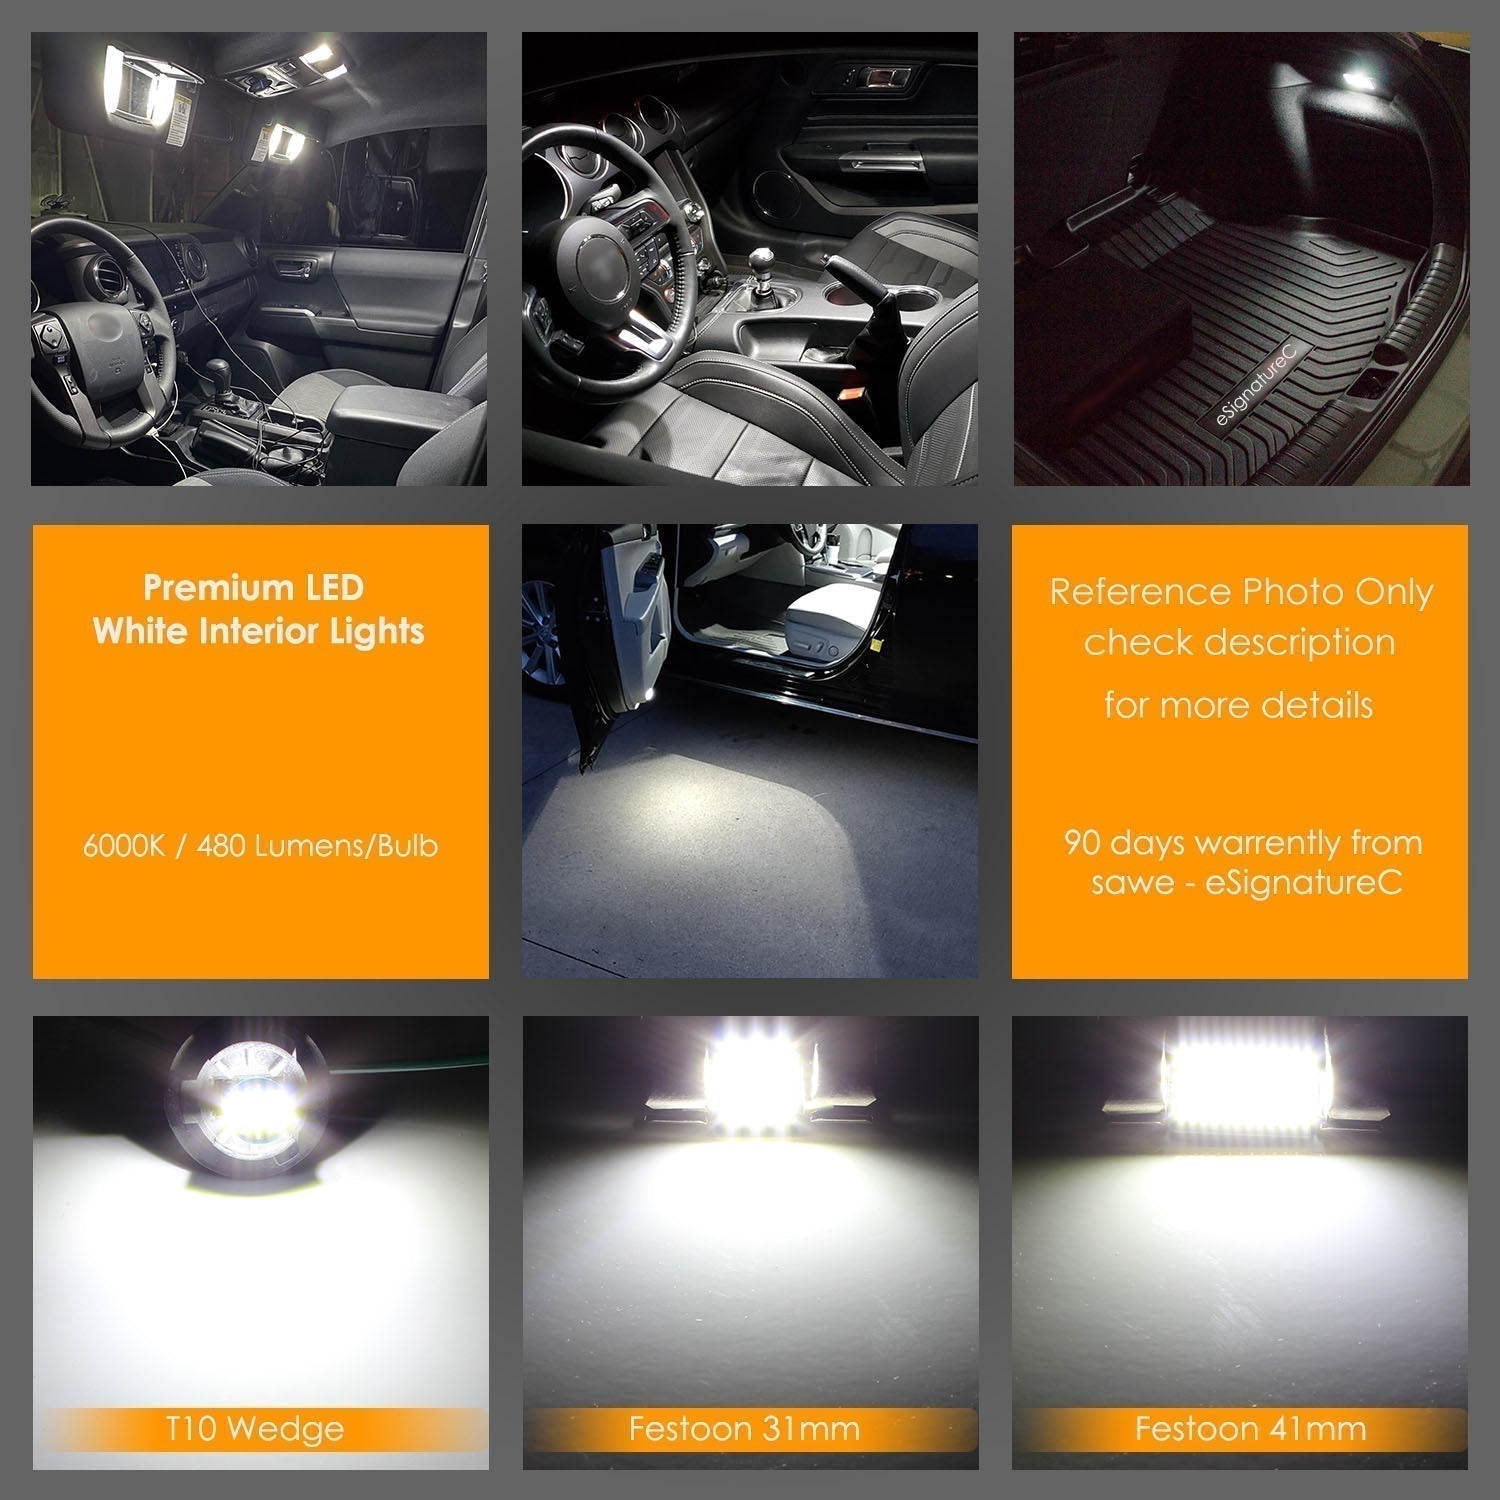 For Volkswagen Tiguan Interior LED Lights - Dome & Map Light Bulbs Package Kit for 2009 - 2015 - White